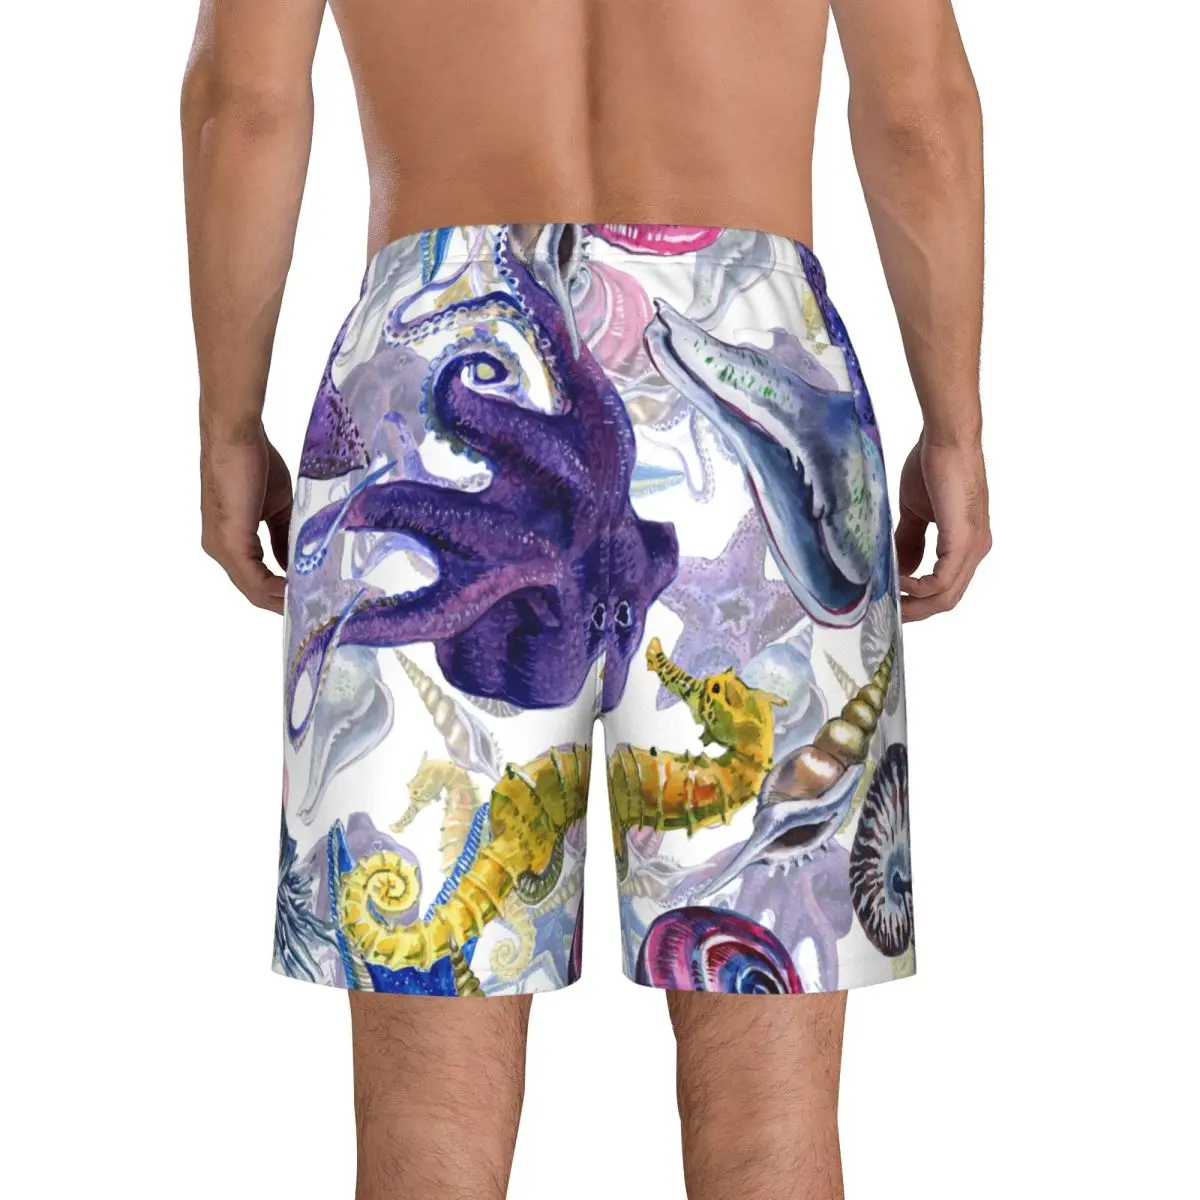 גברים חוף קצר מהיר ייבוש שחייה המטען בצבעי מים חוף צדפים יצורים תת בגדי ים בגדי ים בגד ים קצר - 3